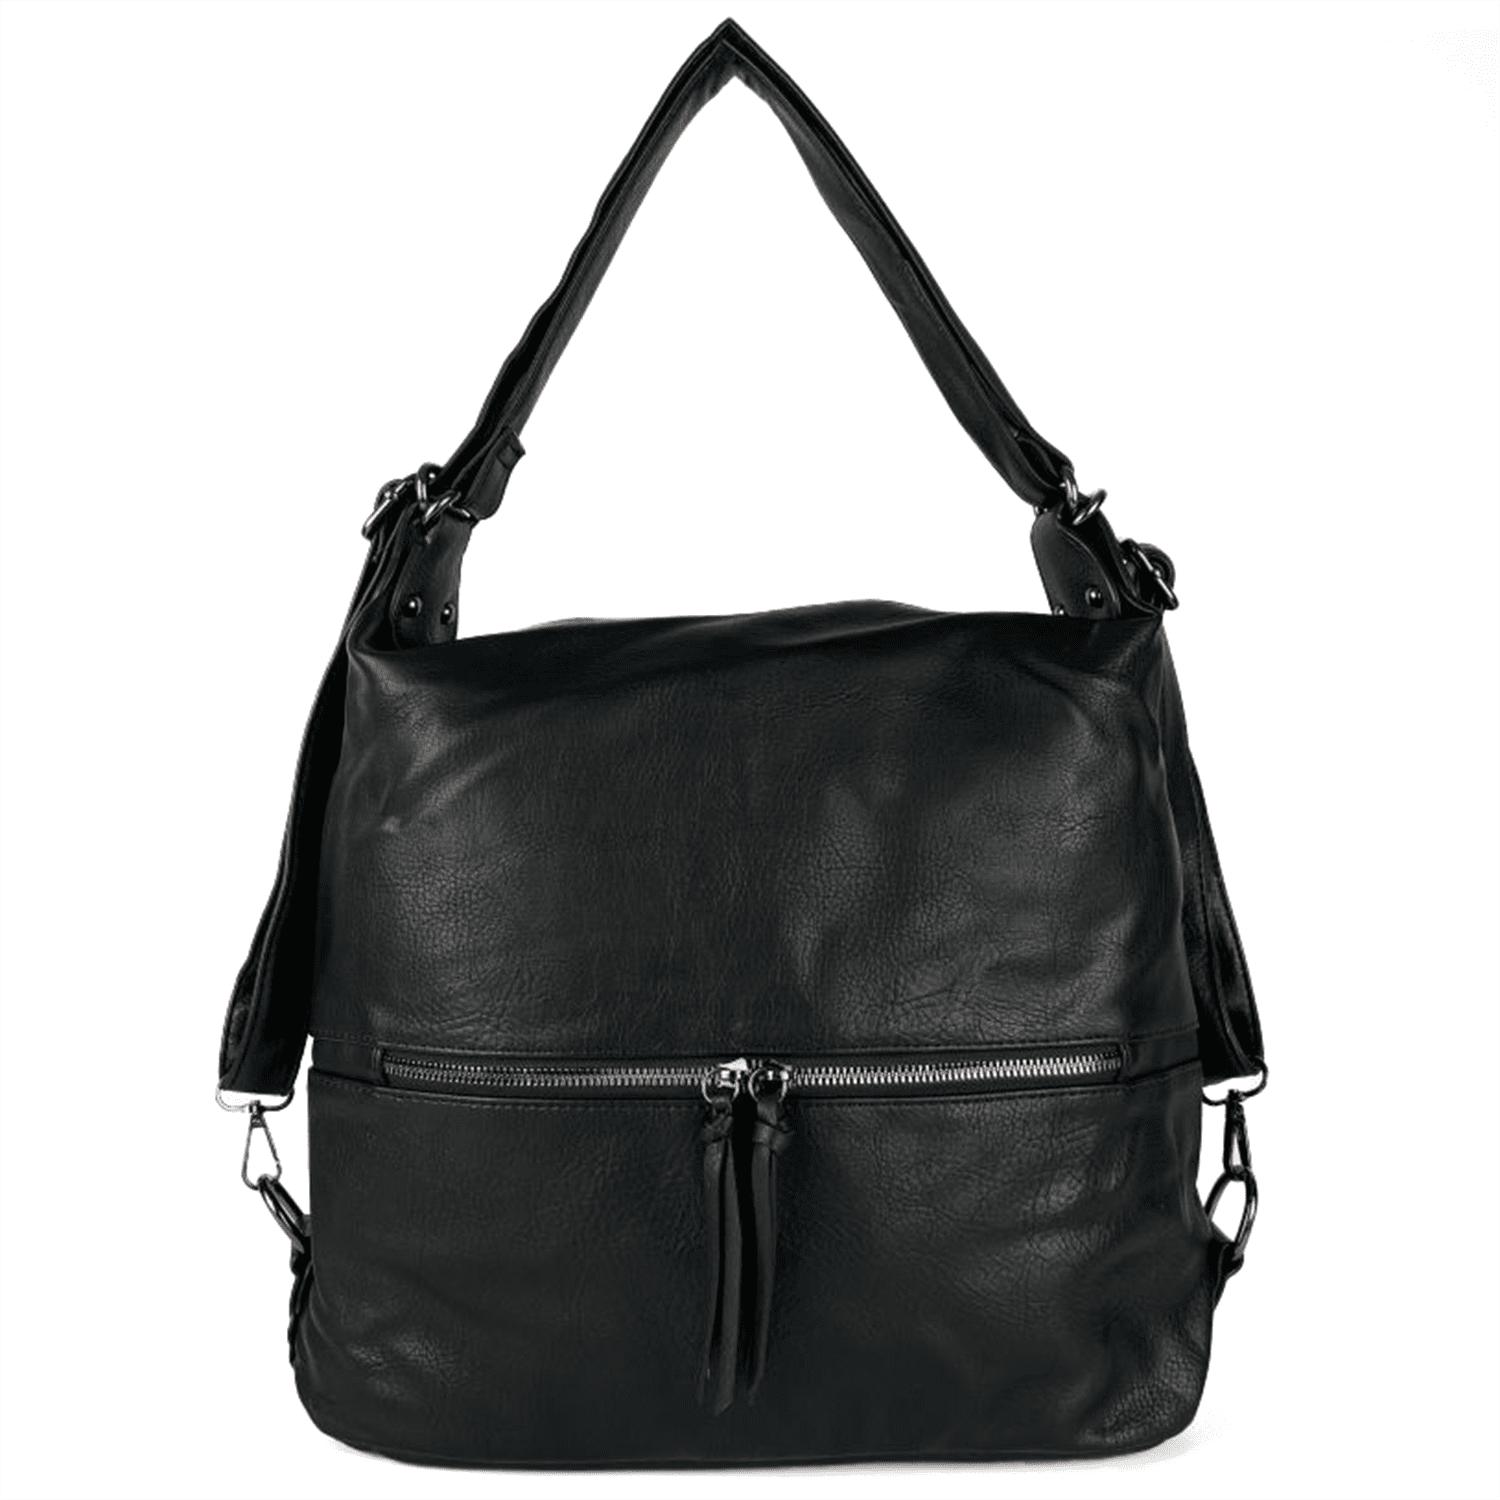 2 в 1 - Голяма чанта и раница - черна